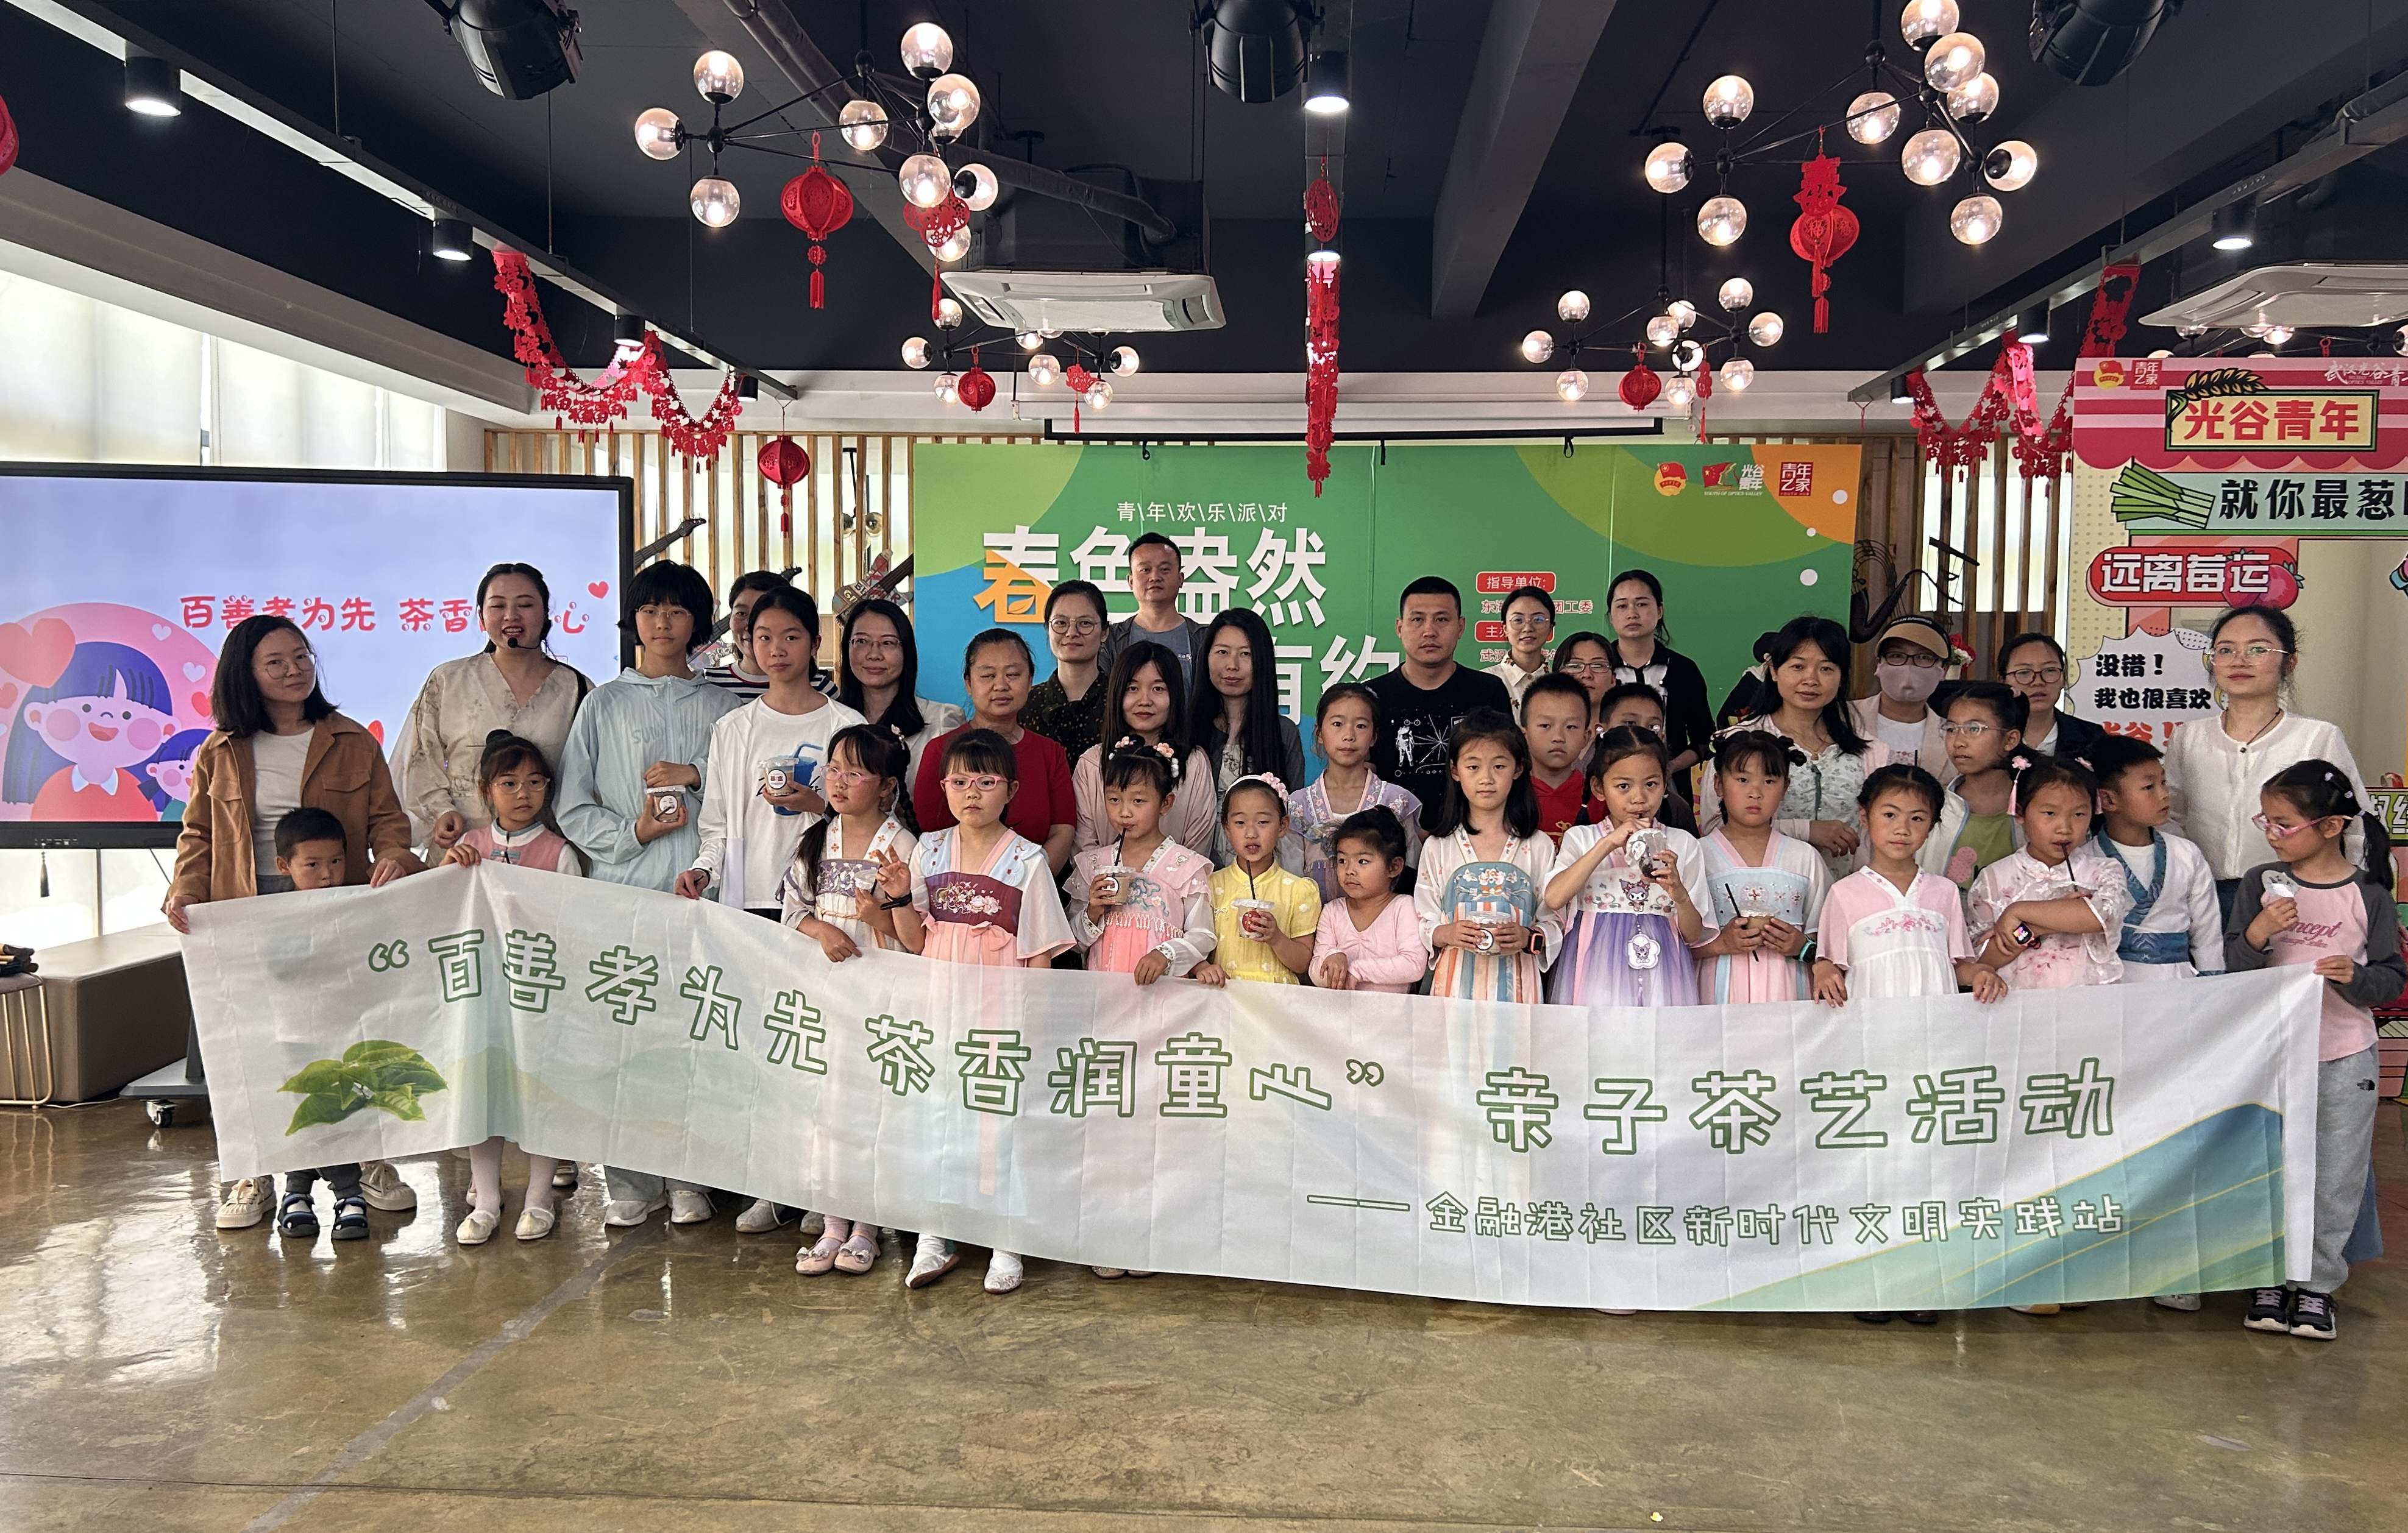 传承中华传统文化 金融港社区举办亲子茶艺活动